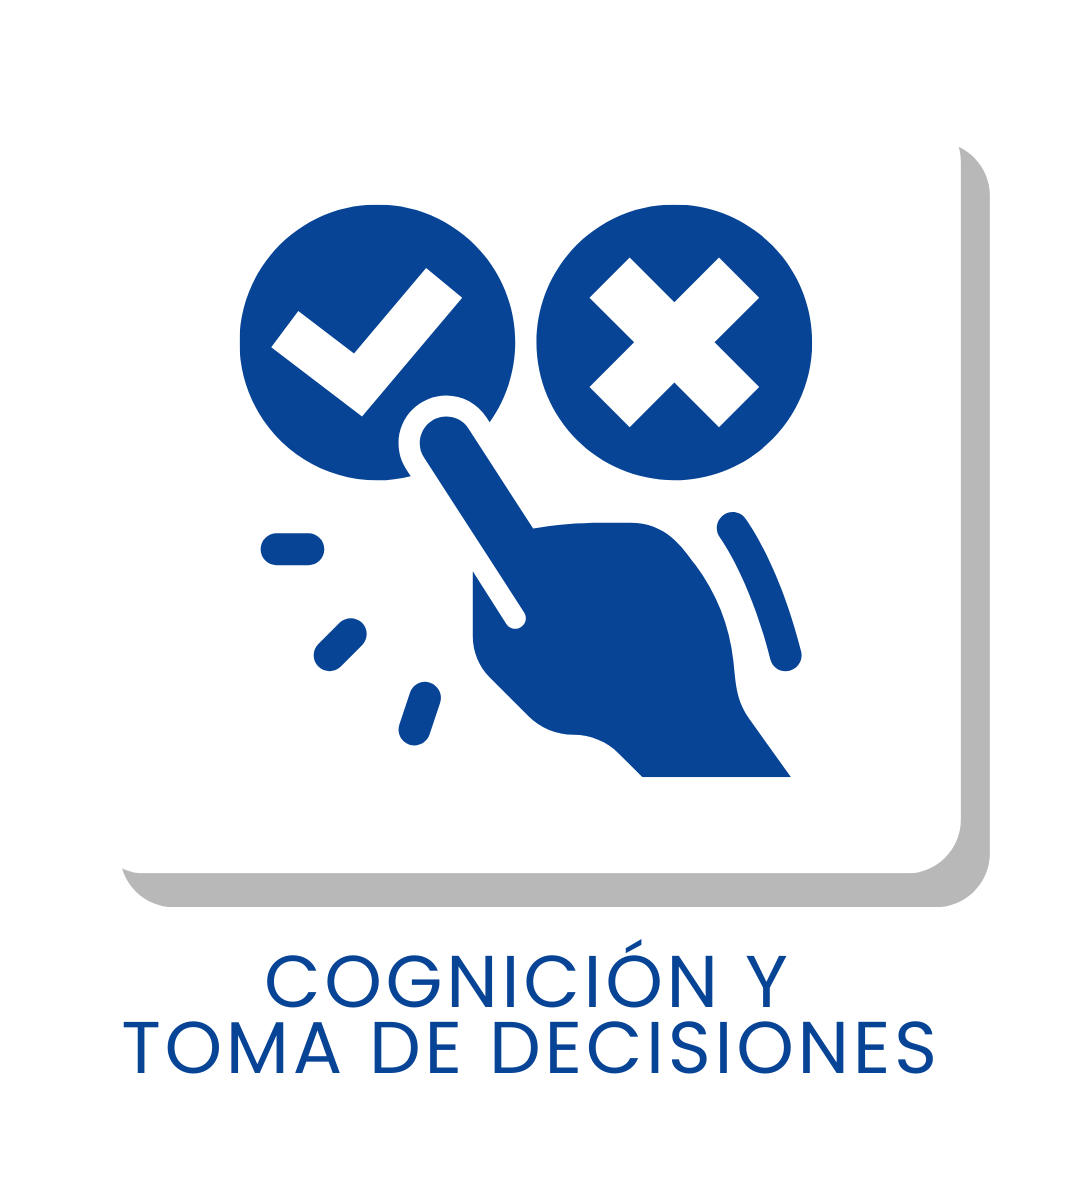 COGNICIÓN Y TOMA DE DECISIONES